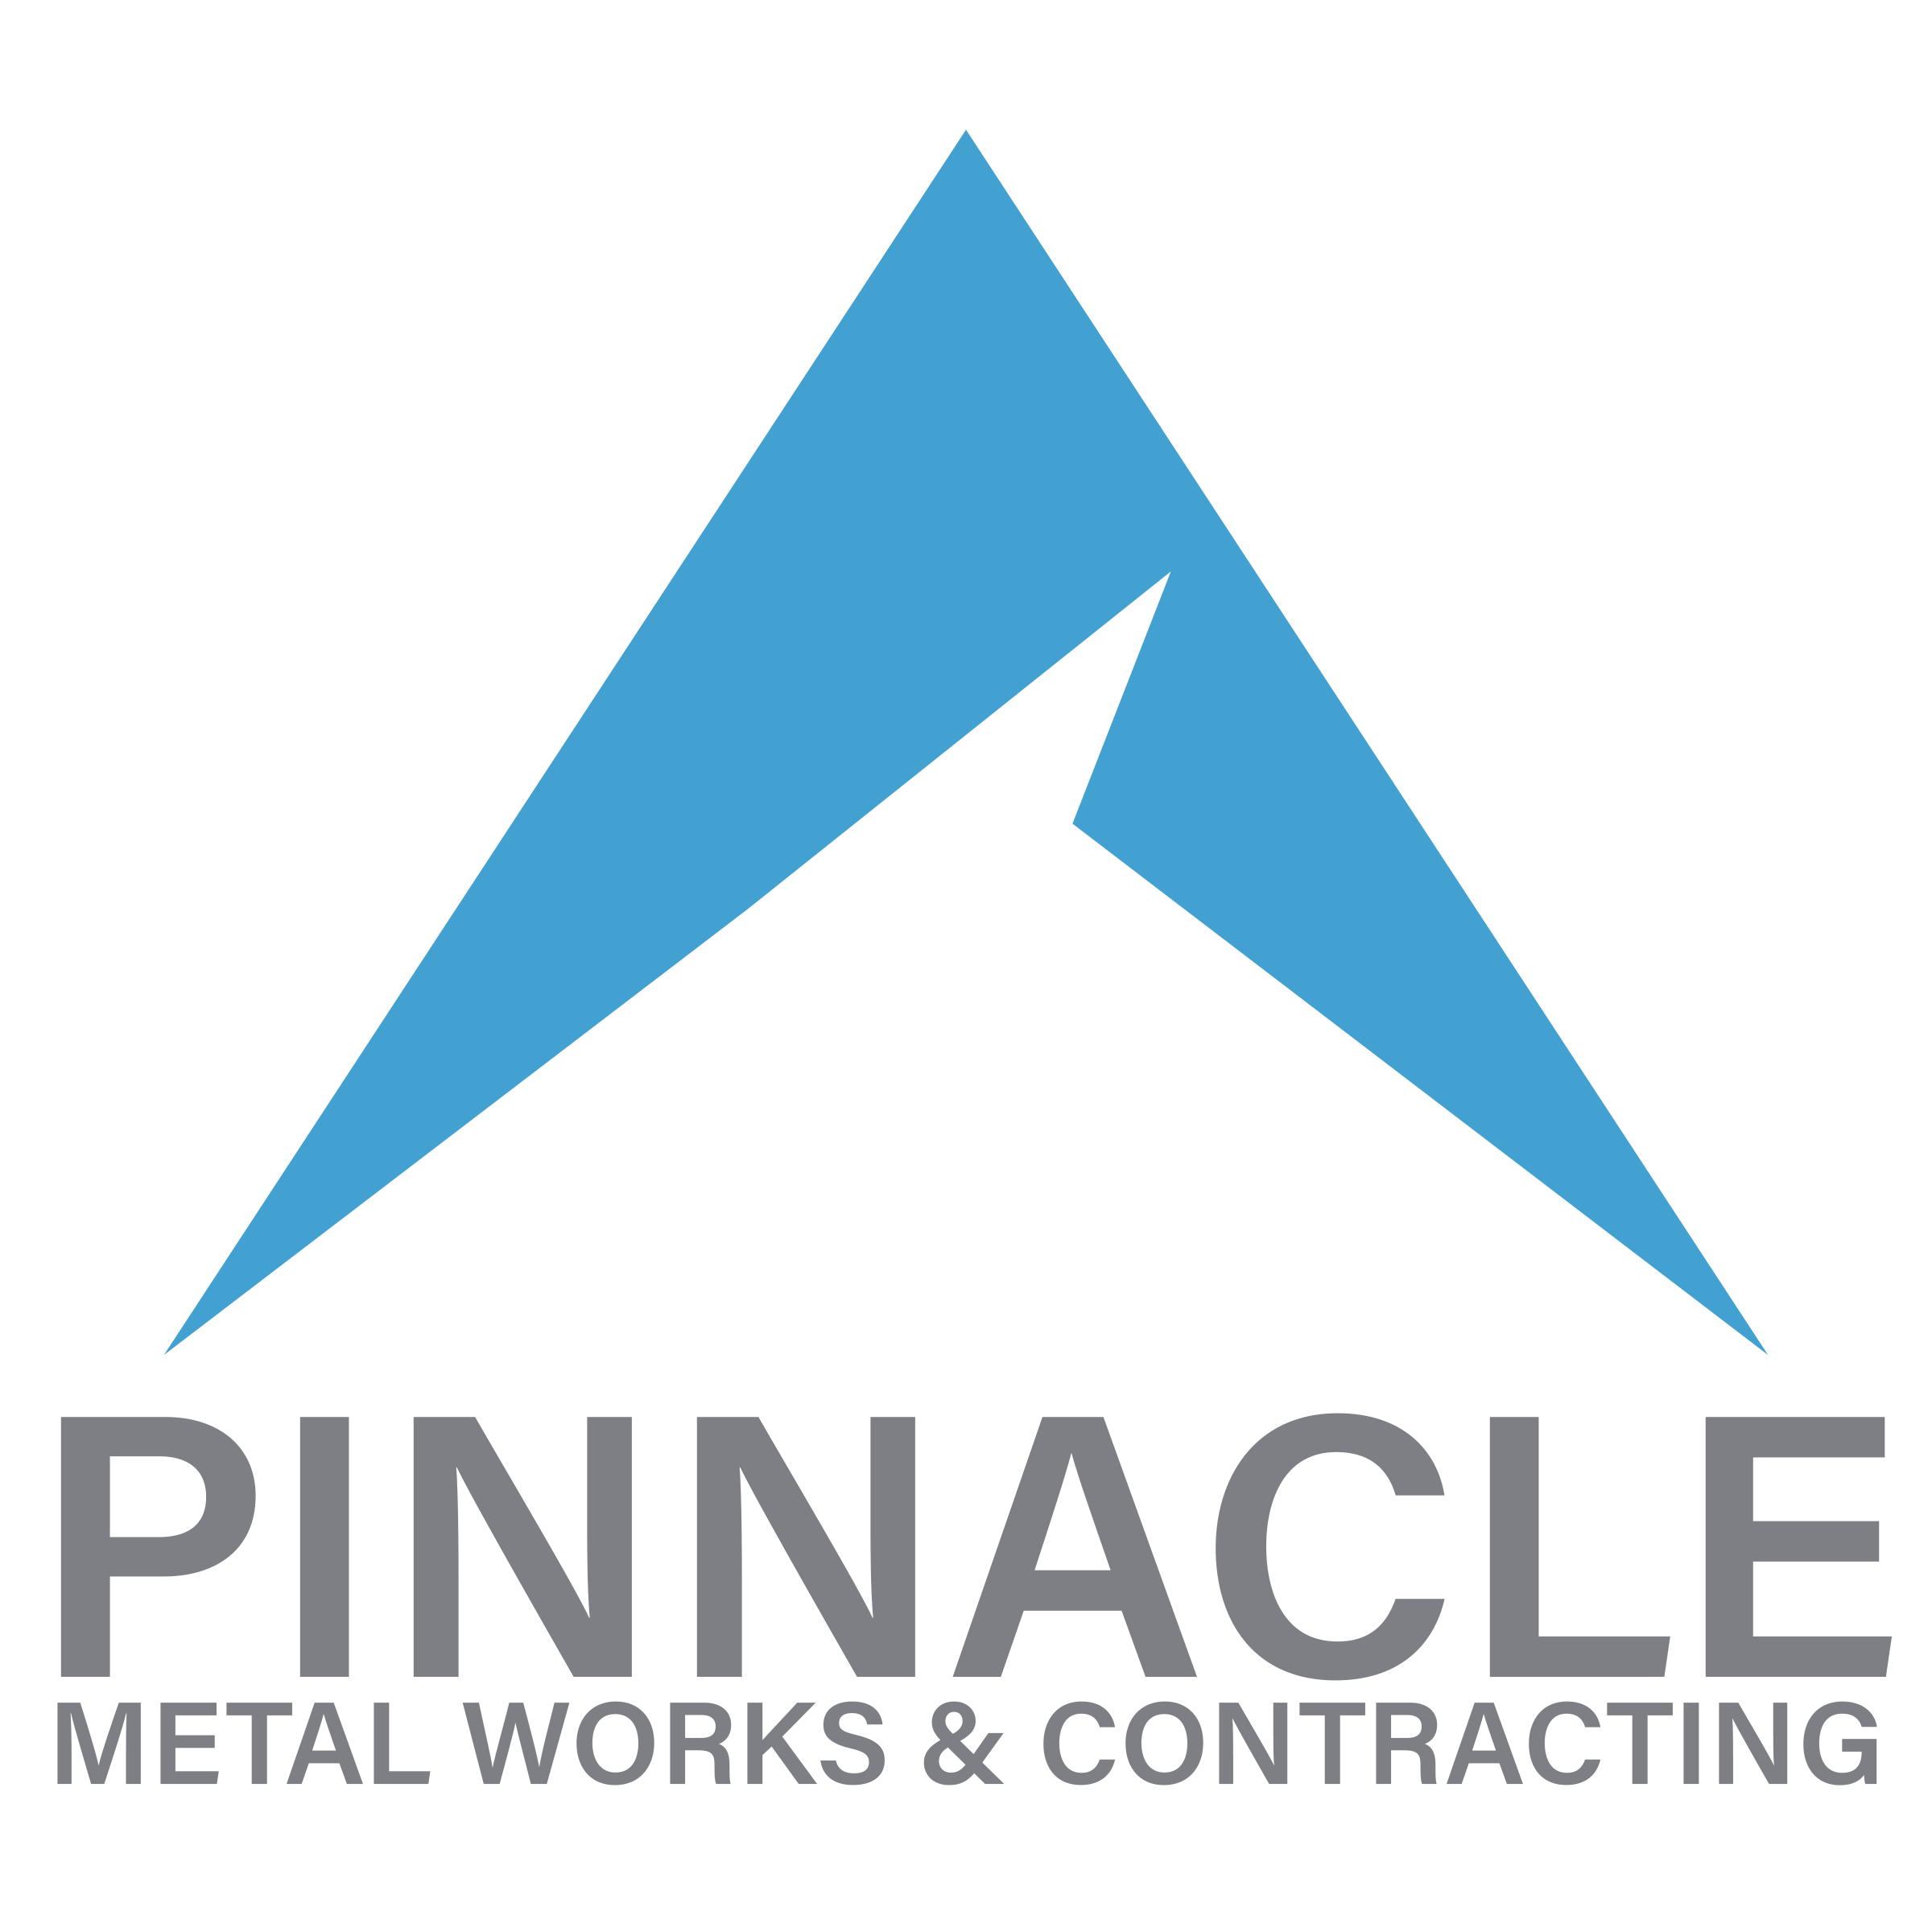 Pinnacle Metal Works & Contracting